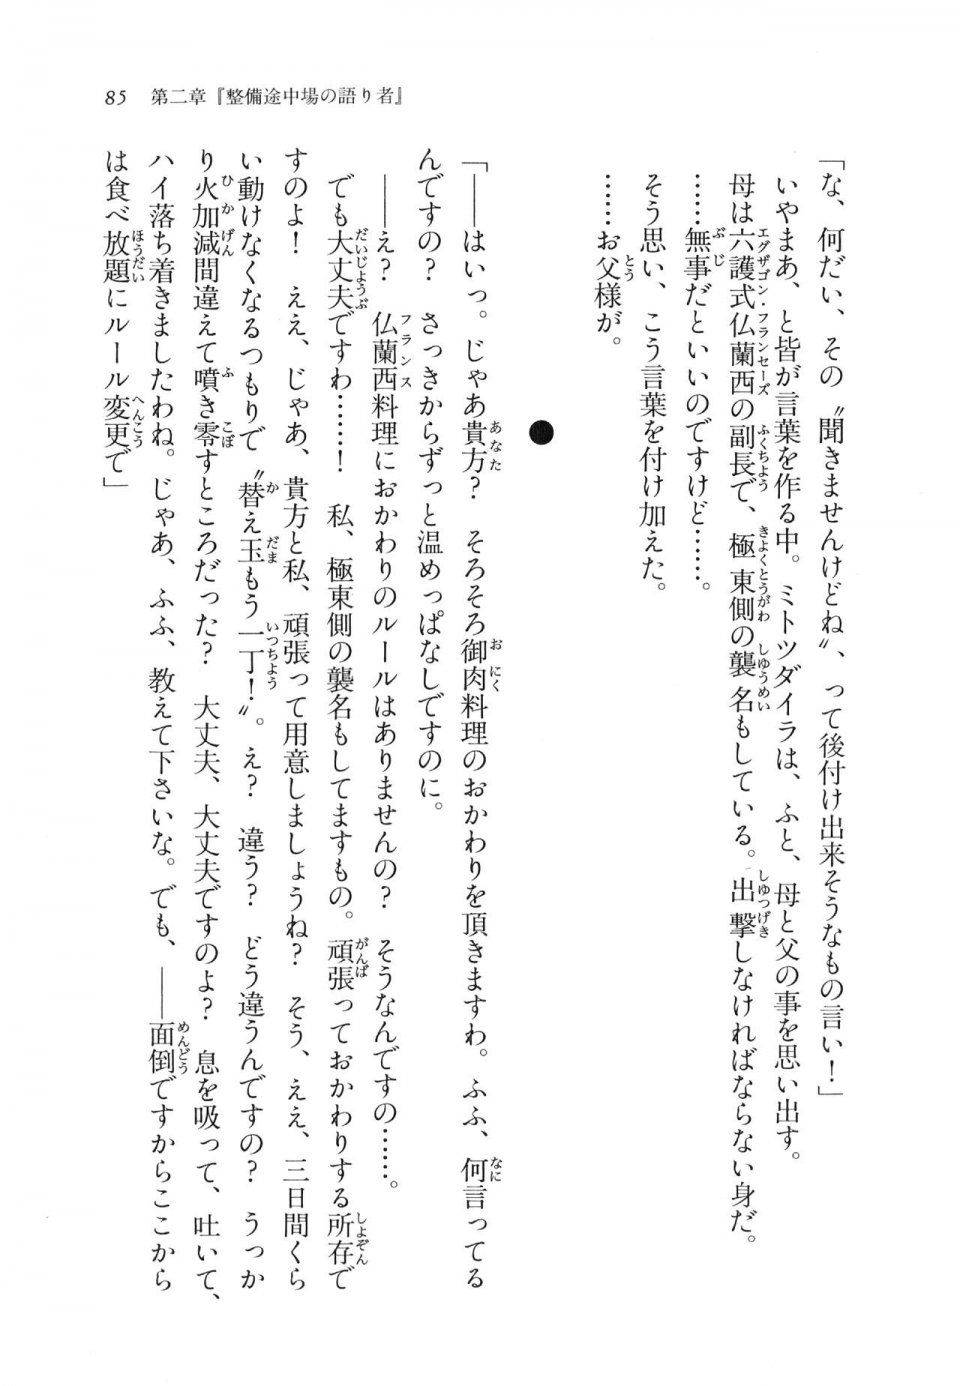 Kyoukai Senjou no Horizon LN Vol 11(5A) - Photo #85